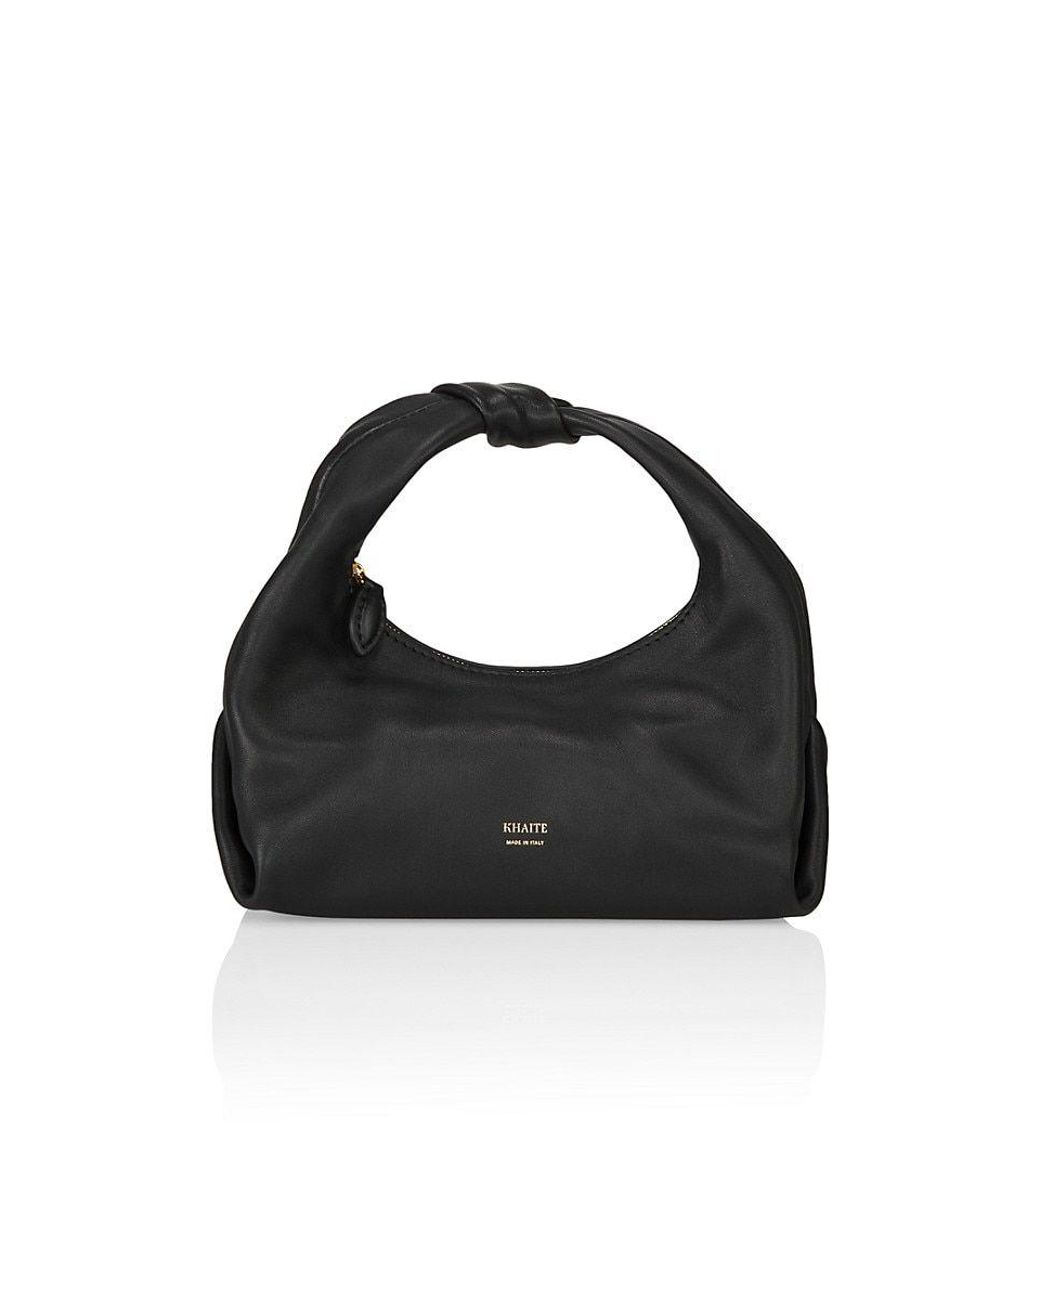 Khaite Beatrice Leather Hobo Bag in Black | Lyst